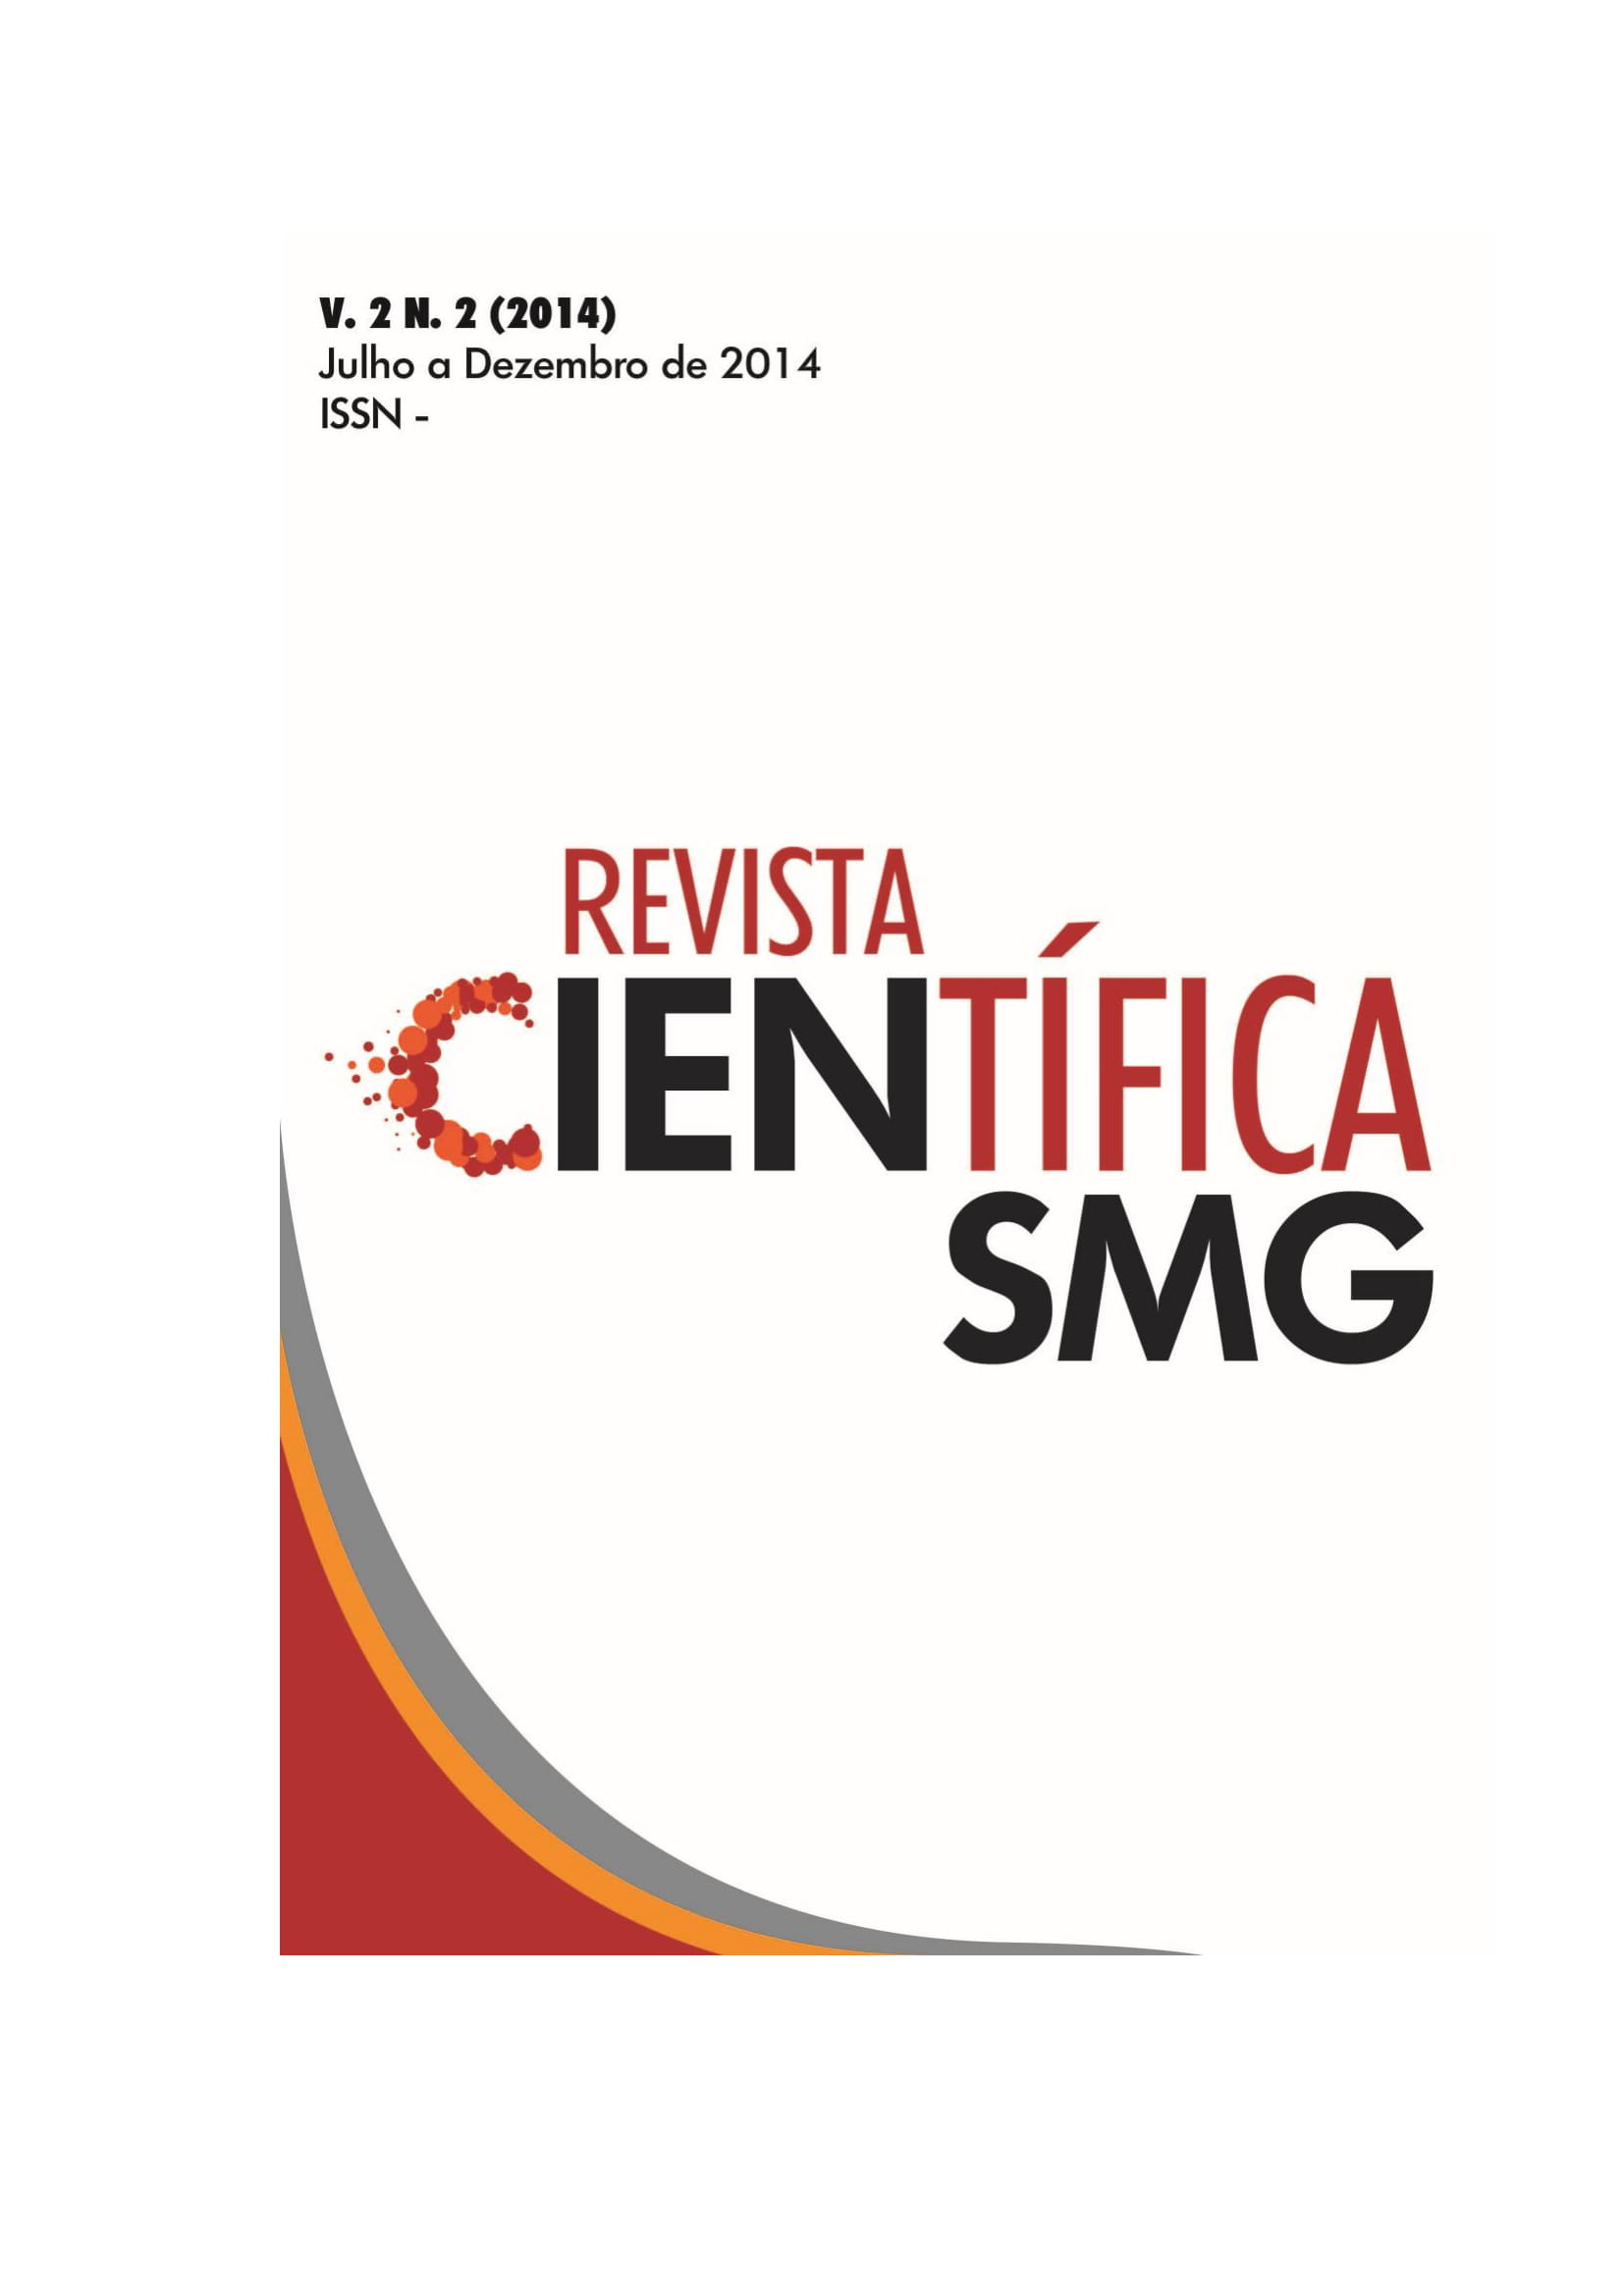 					Visualizar v. 2 n. 2 (2014): REVISTA CIENTÍFICA SMG - JULHO A DEZEMBRO 2014
				